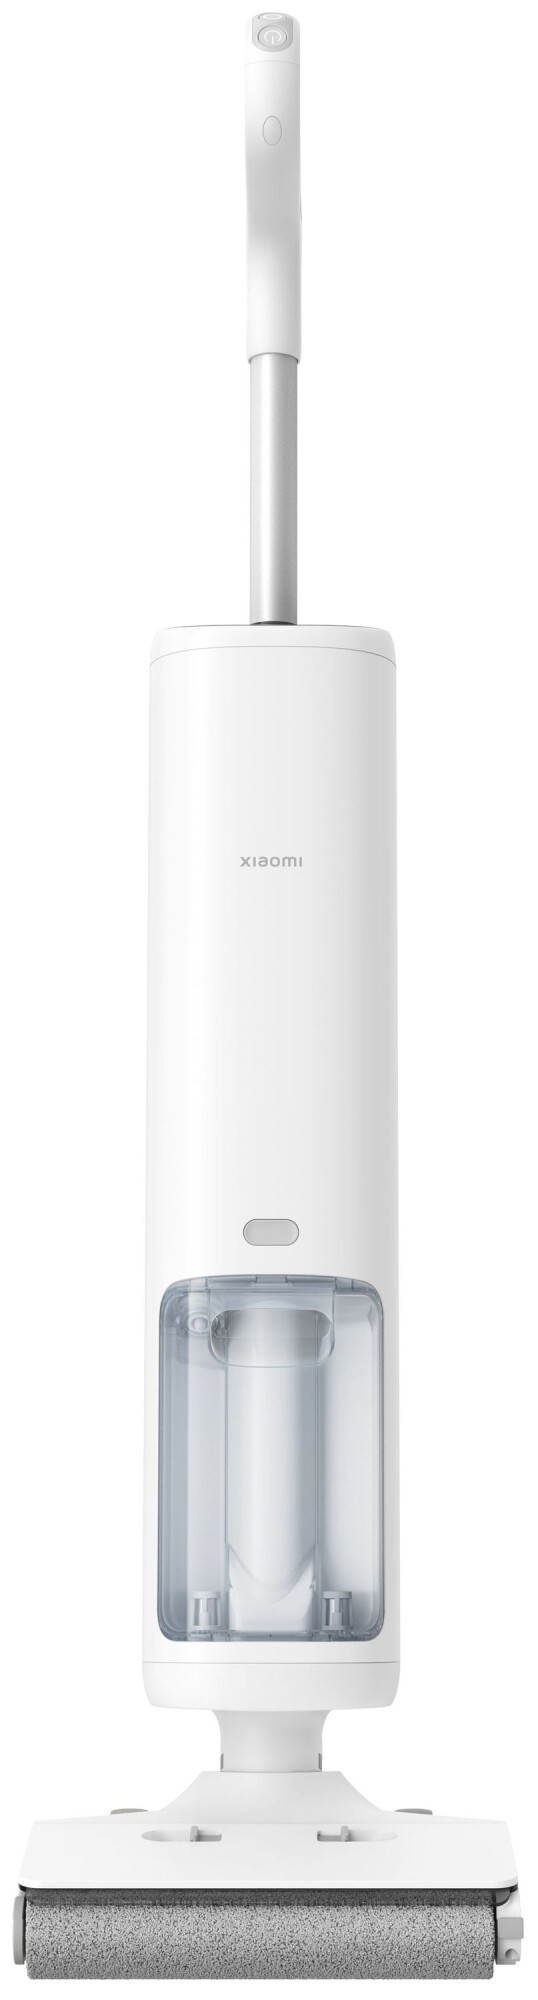 Пылесос Xiaomi Truclean W10 Pro Wet Dry Vacuum EU в интернет-магазине, главное фото